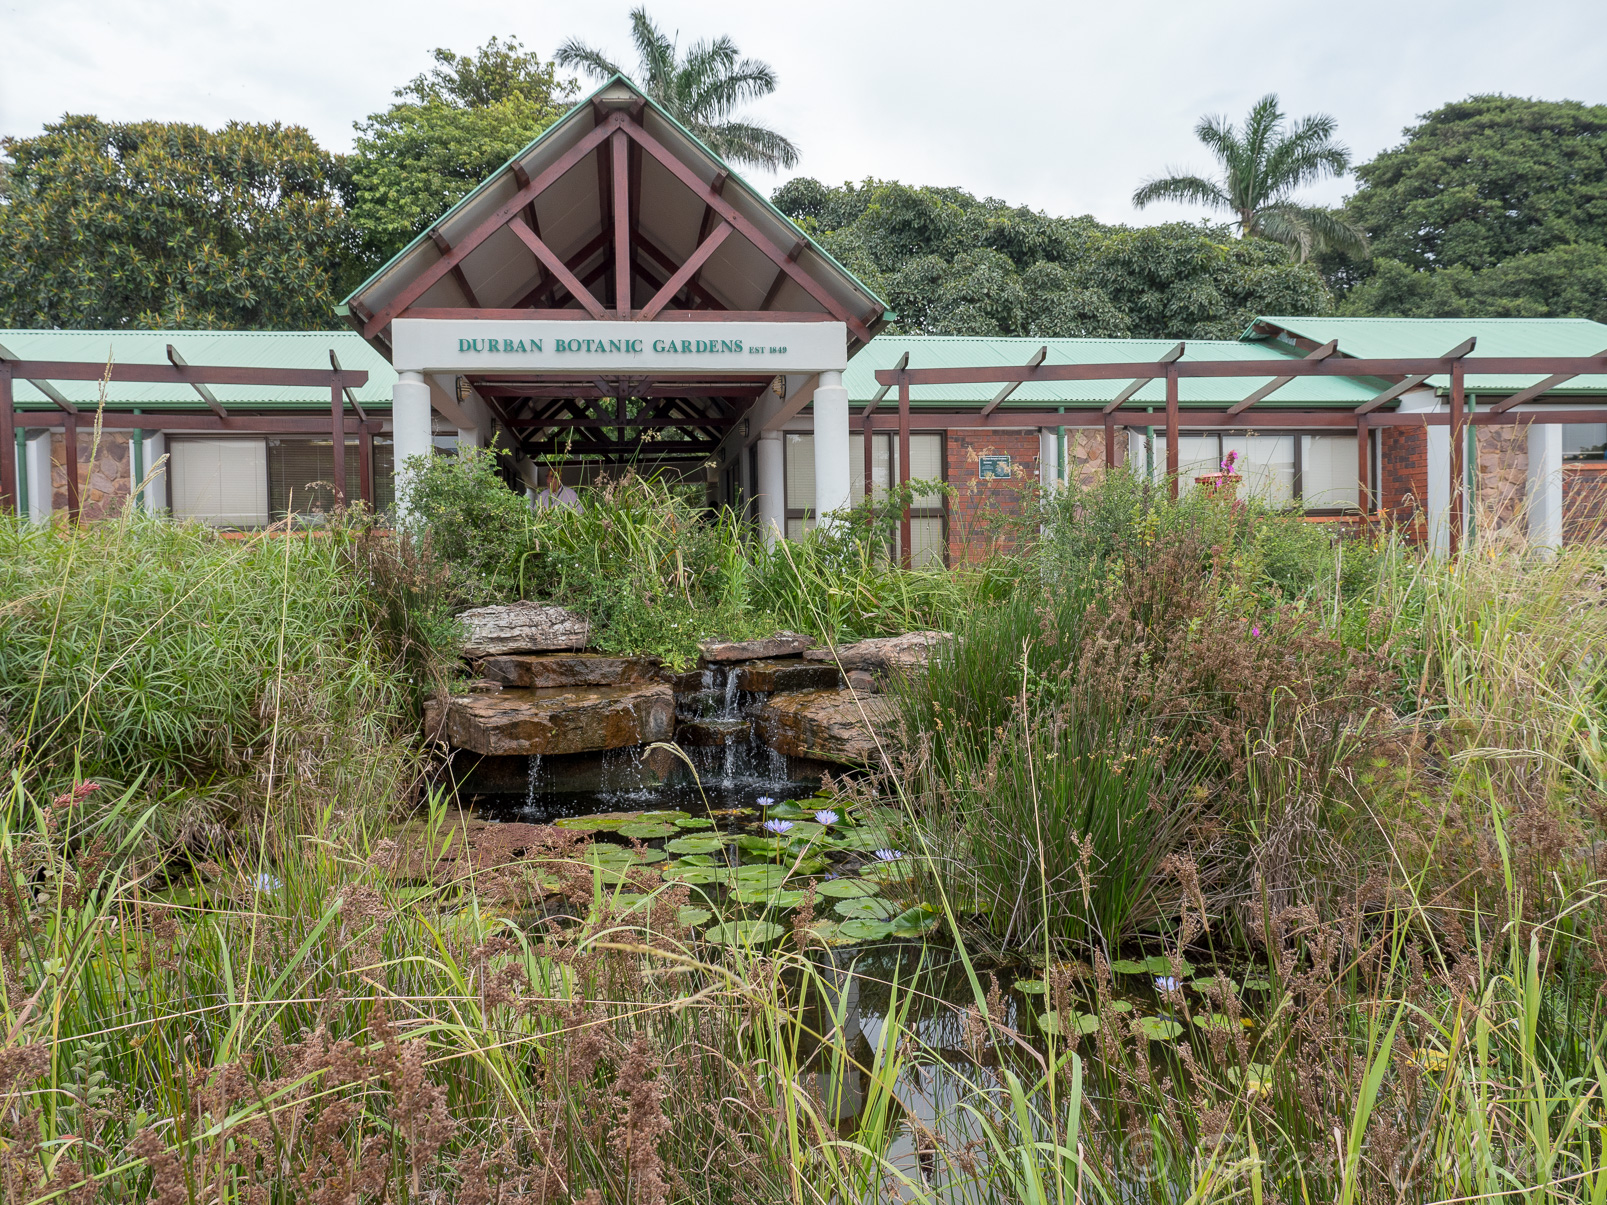 Jardins botaniques de Durban.